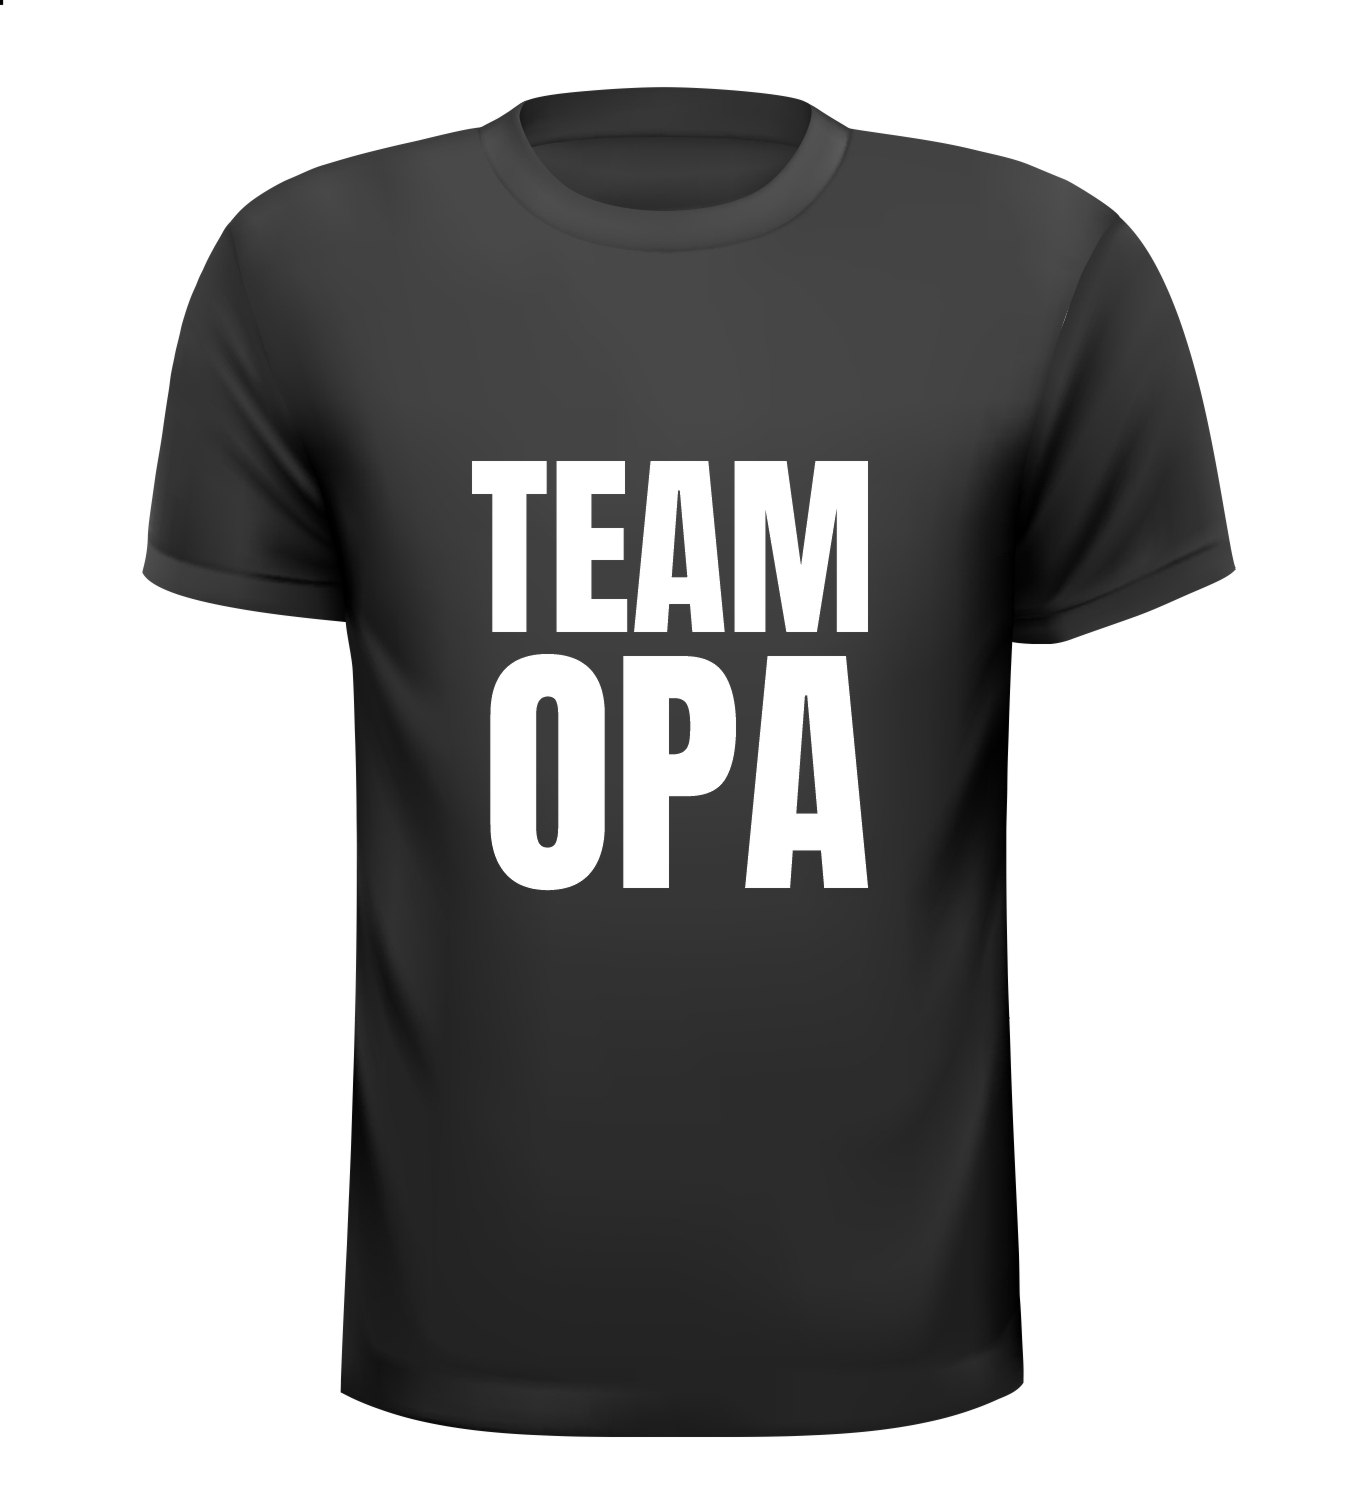 Shirtje voor team Opa.